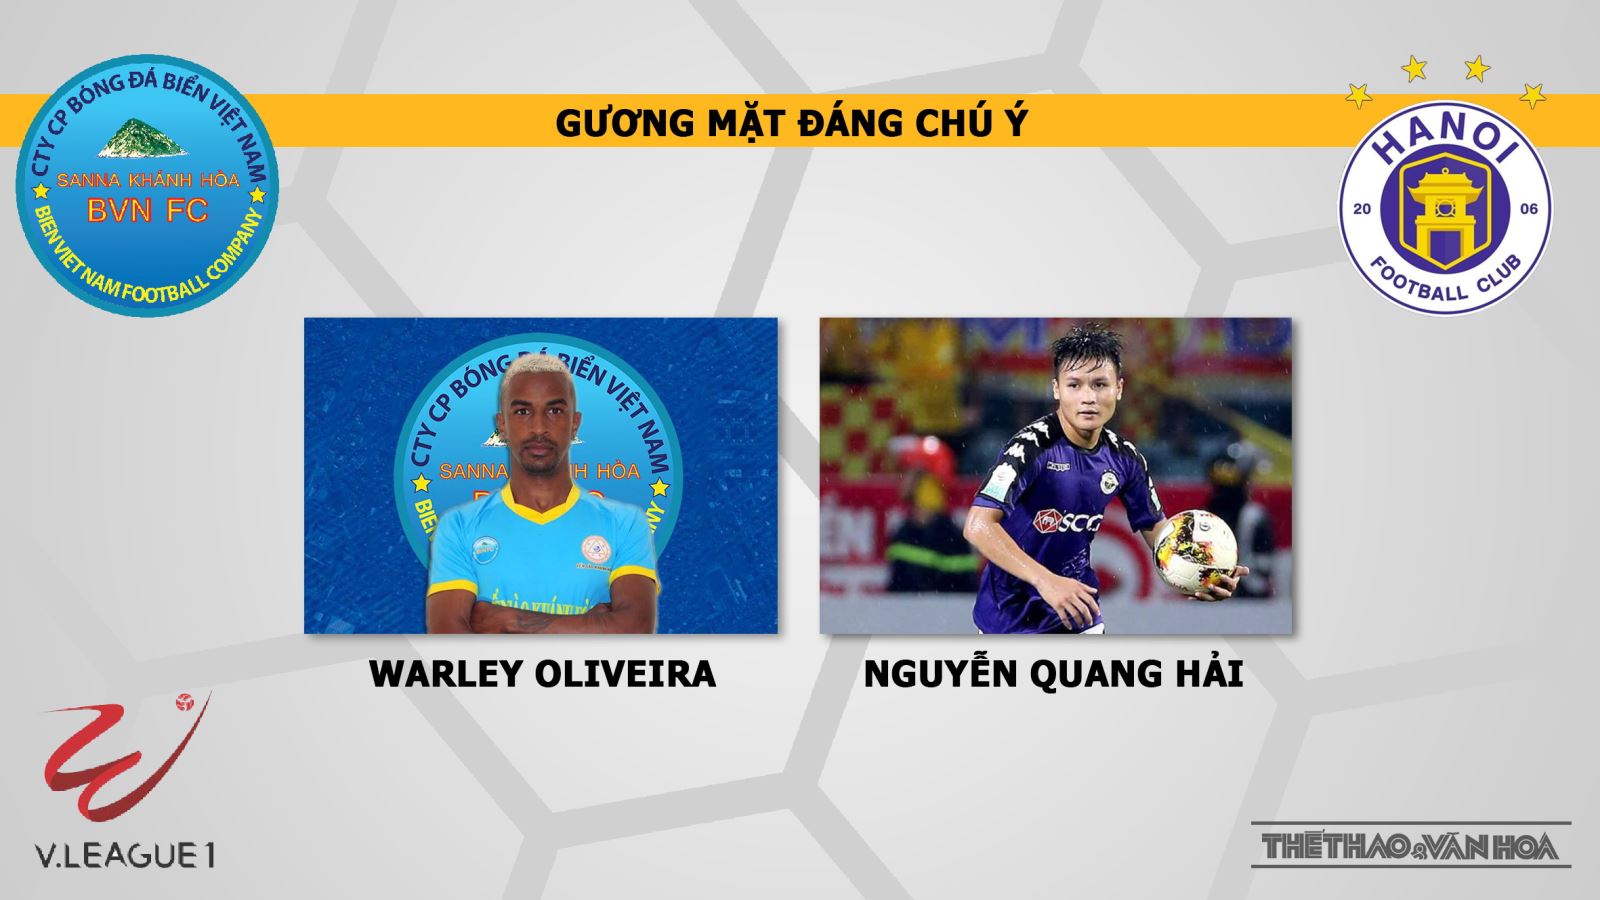 Khánh Hòa vs Hà Nội: Nhận định và trực tiếp bóng đá VTV6 (19h00, 12/4). Lịch thi đấu V League 2019